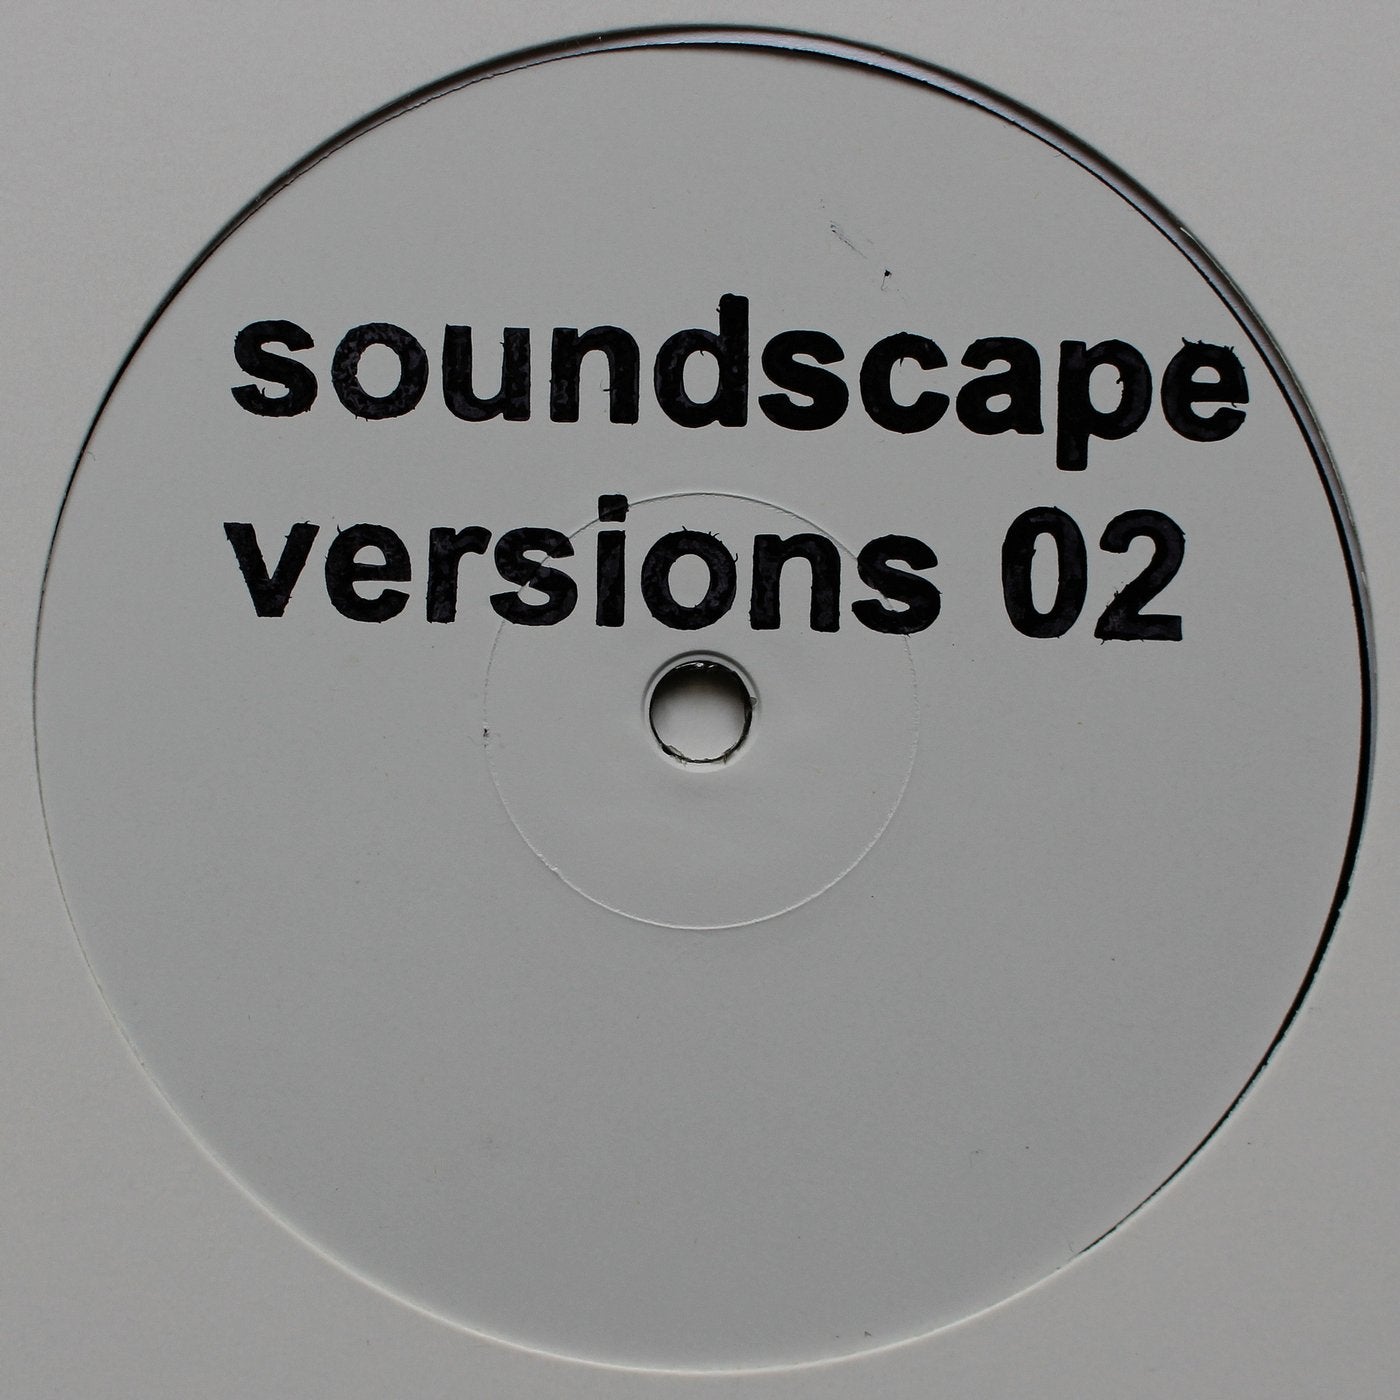 Soundscape Versions 02